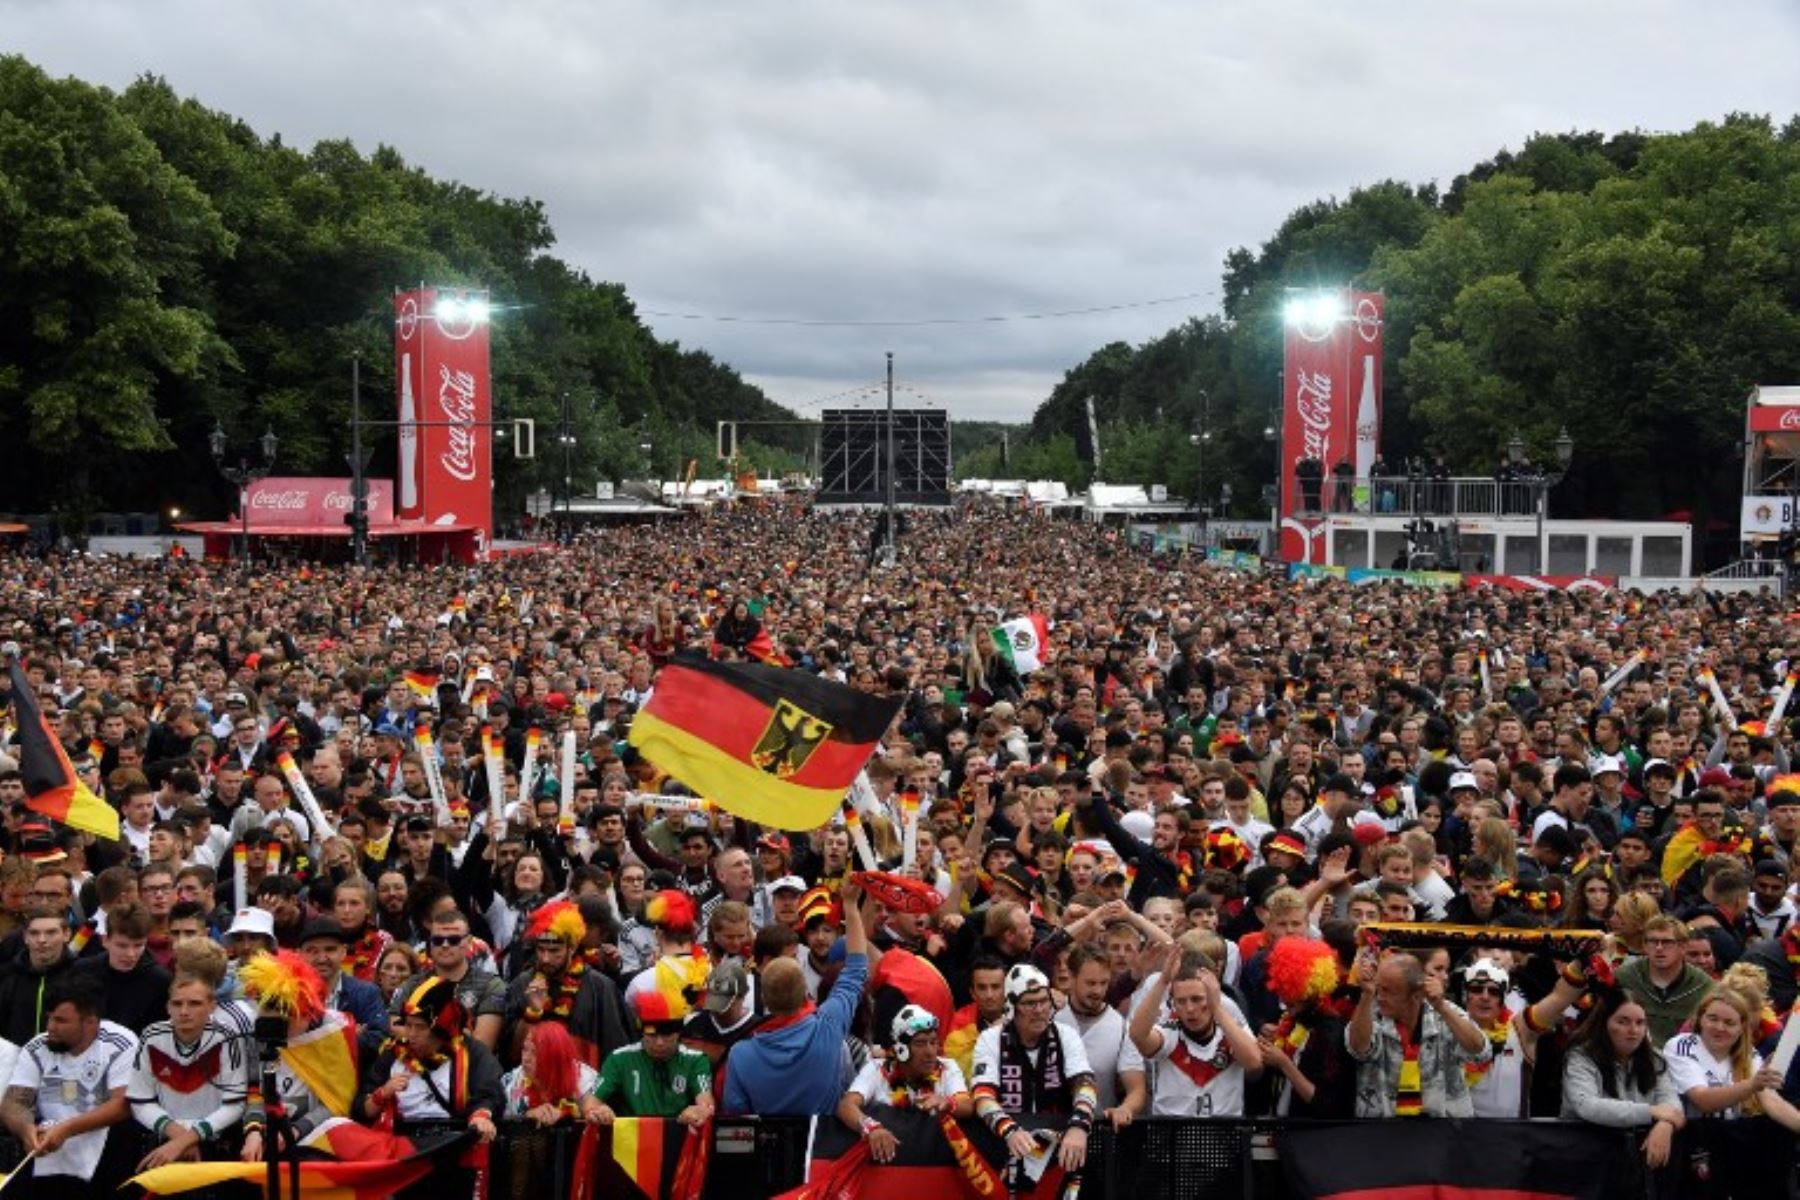 Los partidarios del equipo nacional alemán de fútbol reaccionan después de que su equipo anotó un segundo gol mientras ven en una pantalla gigante el partido de fútbol del Grupo F de la Copa Mundial Rusia 2018 entre Alemania y Suecia.Foto:AFP